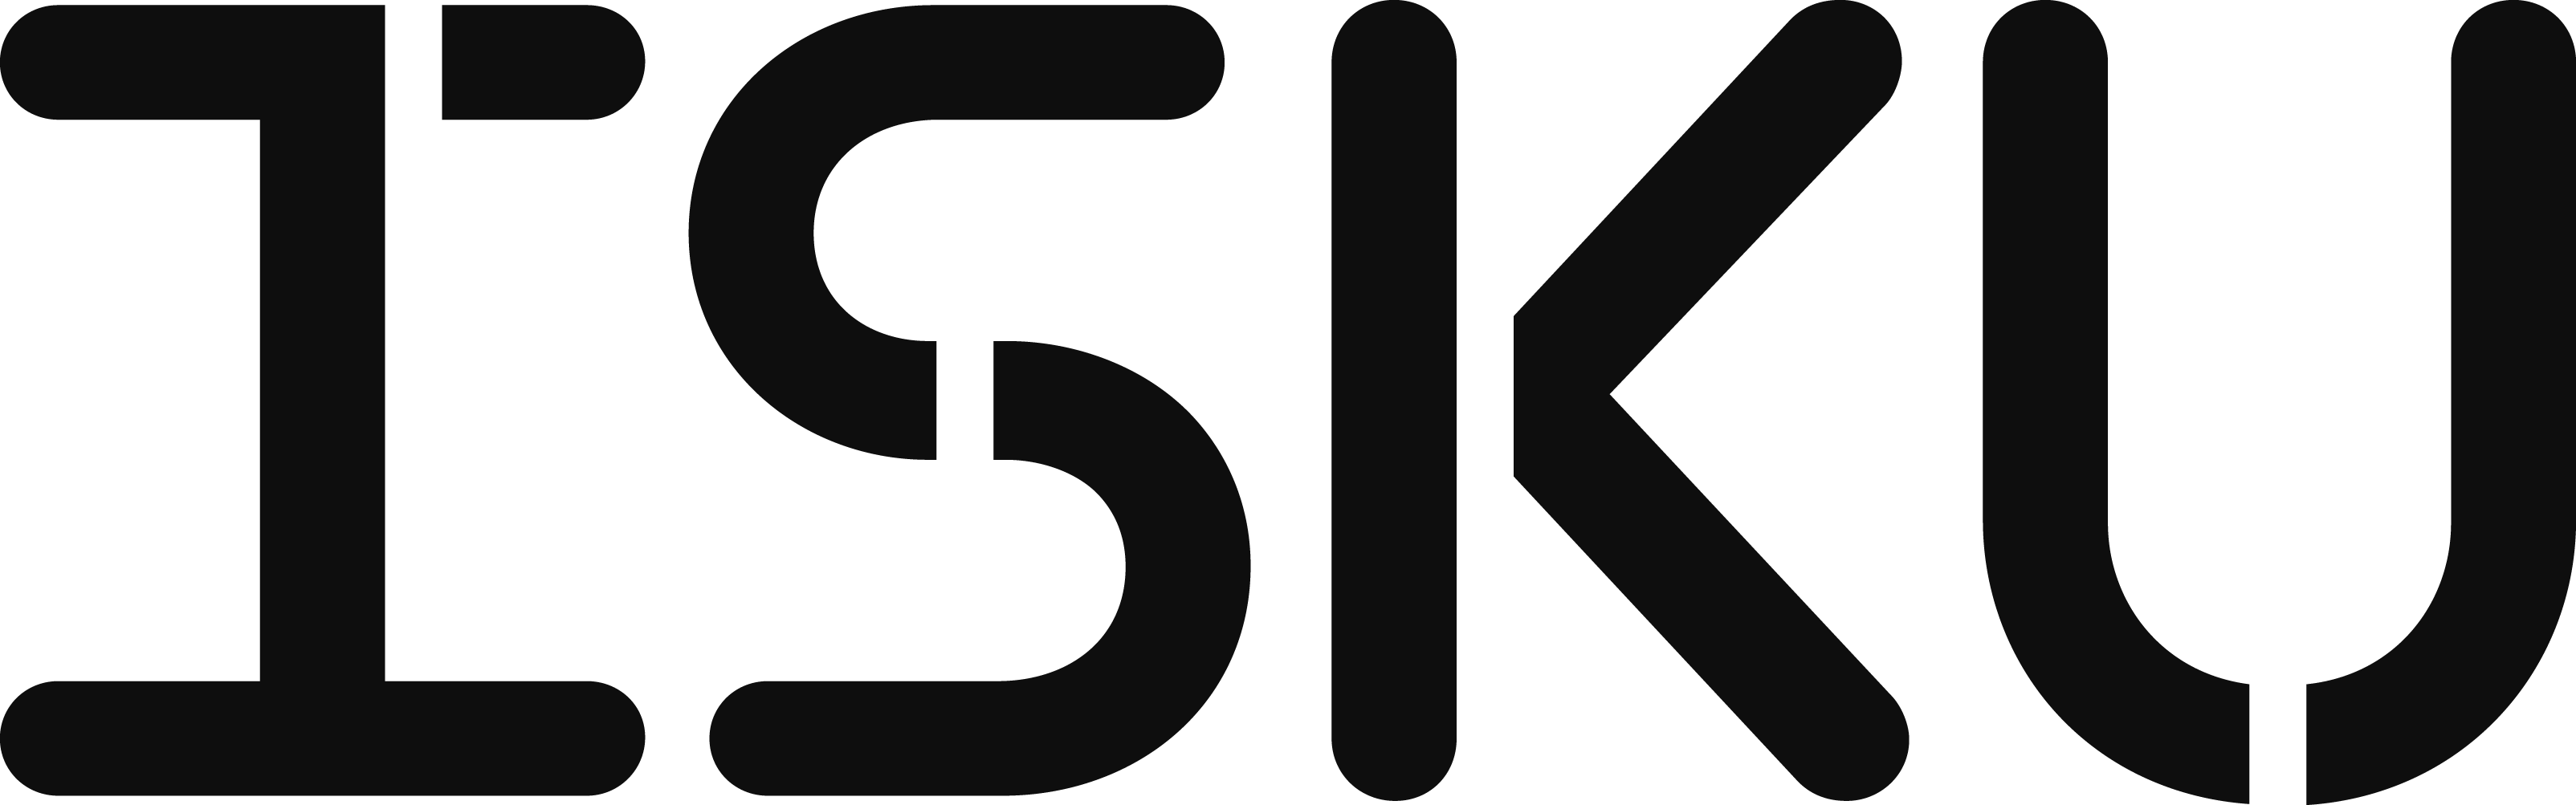 isku-logo